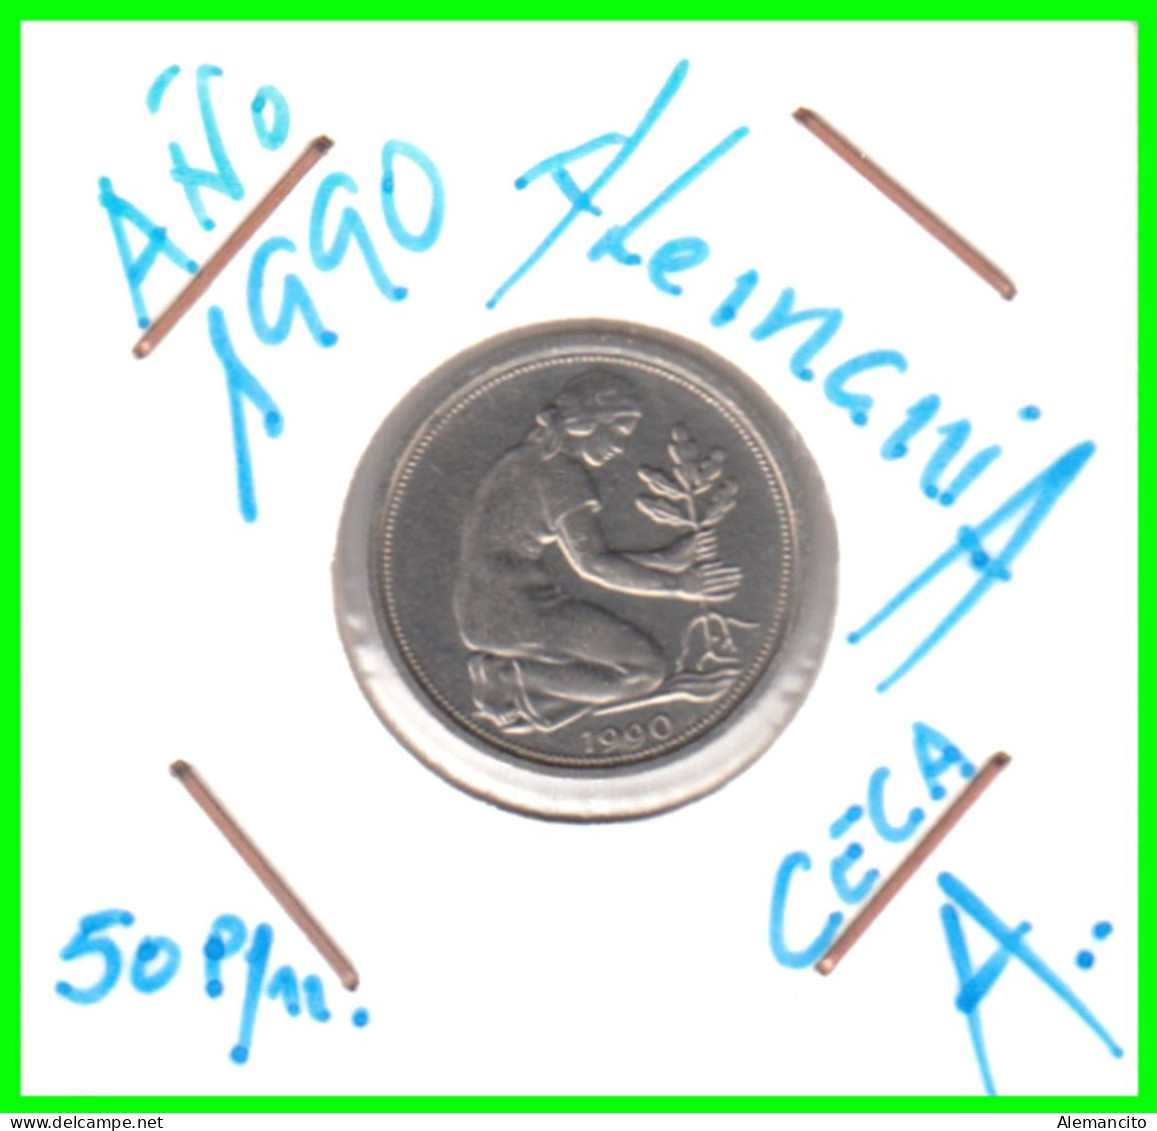 ALEMANIA -DEUTSCHLAND - GERMANY-MONEDA DE LA REPUBLICA FEDERAL DE ALEMANIA DE 50 Pfn. - DEL AÑO 1990 CECA - A - BERLIN - 50 Pfennig